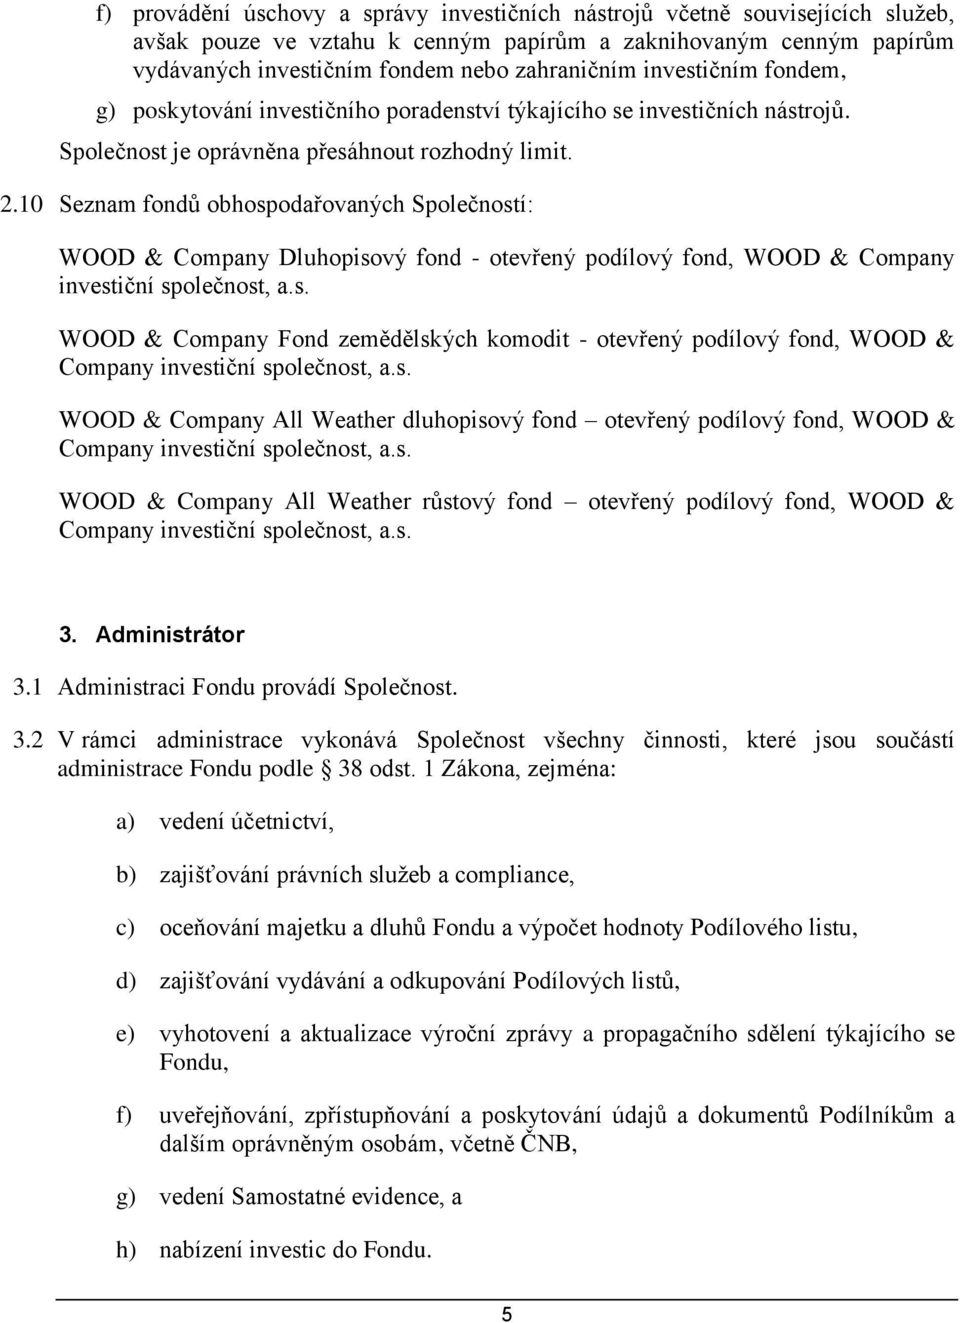 10 Seznam fondů obhospodařovaných Společností: WOOD & Company Dluhopisový fond - otevřený podílový fond, WOOD & Company investiční společnost, a.s. WOOD & Company Fond zemědělských komodit - otevřený podílový fond, WOOD & Company investiční společnost, a.